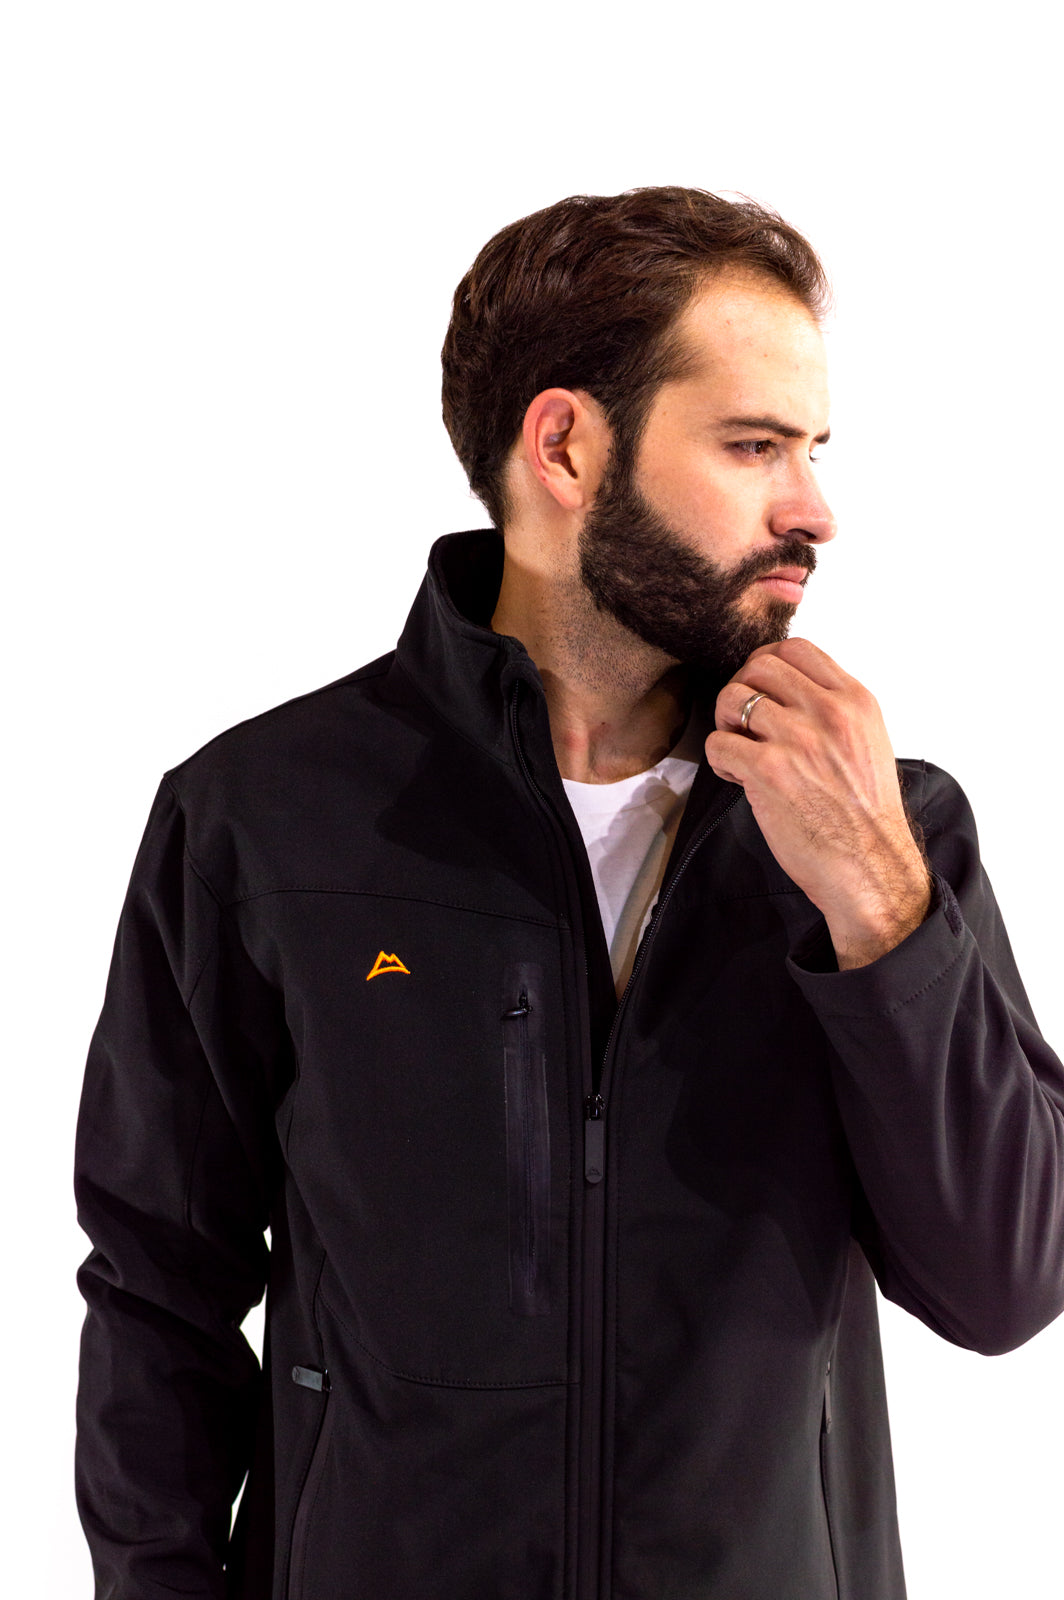 Men's Jacket Spandex Black/Orange JK1995-SP1-2